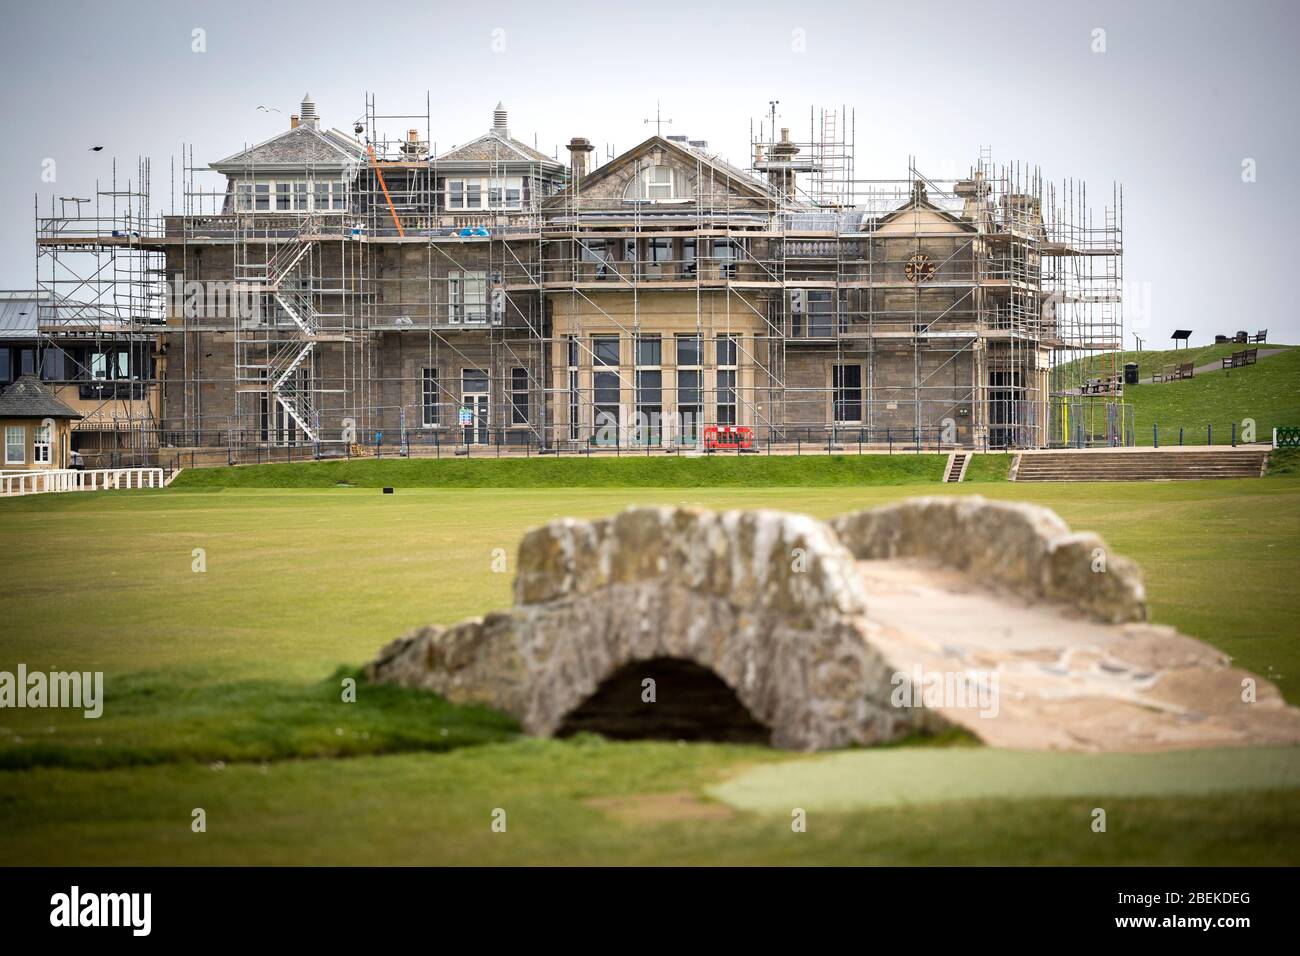 Il Royal and Ancient Golf Club e il Ponte di Swilcan sul campo Vecchio a St Andrews in Scozia. Conosciuto come la casa del golf, il campo da golf più antico e più iconico del mondo ospiterà il 150° Open nel 2022, dopo che quest'anno il Royal St George's a Kent sarà rimandato all'anno prossimo. Foto Stock